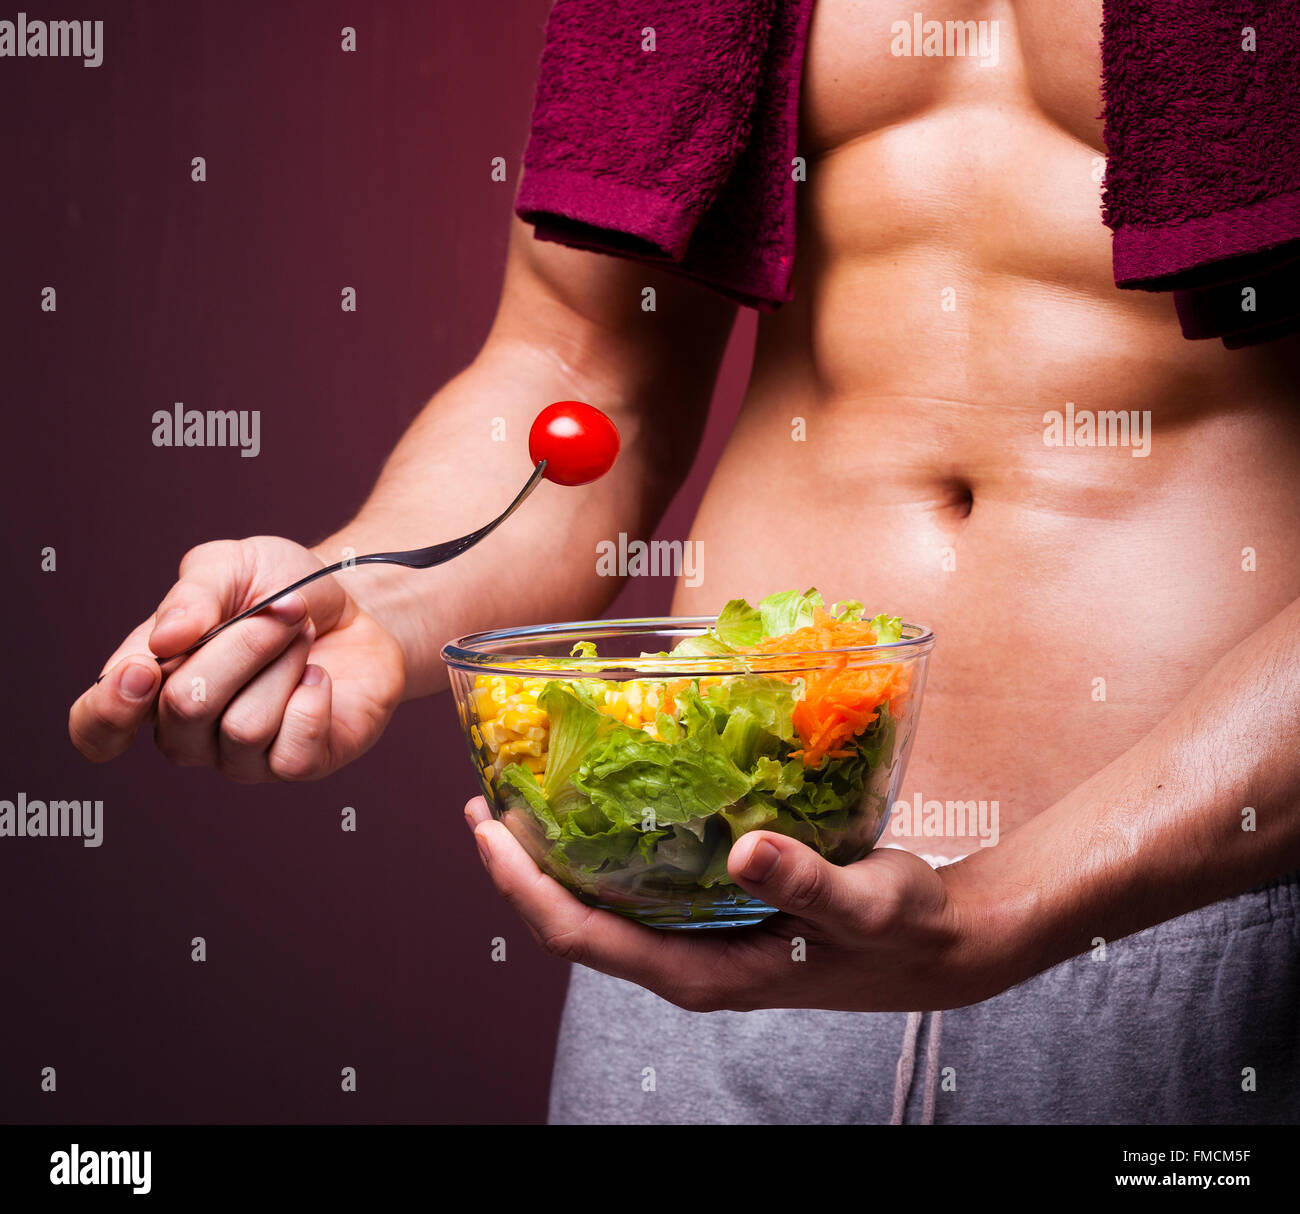 Muskulöser Mann hält eine Schüssel mit Salat auf Grunge Hintergrund Stockfoto